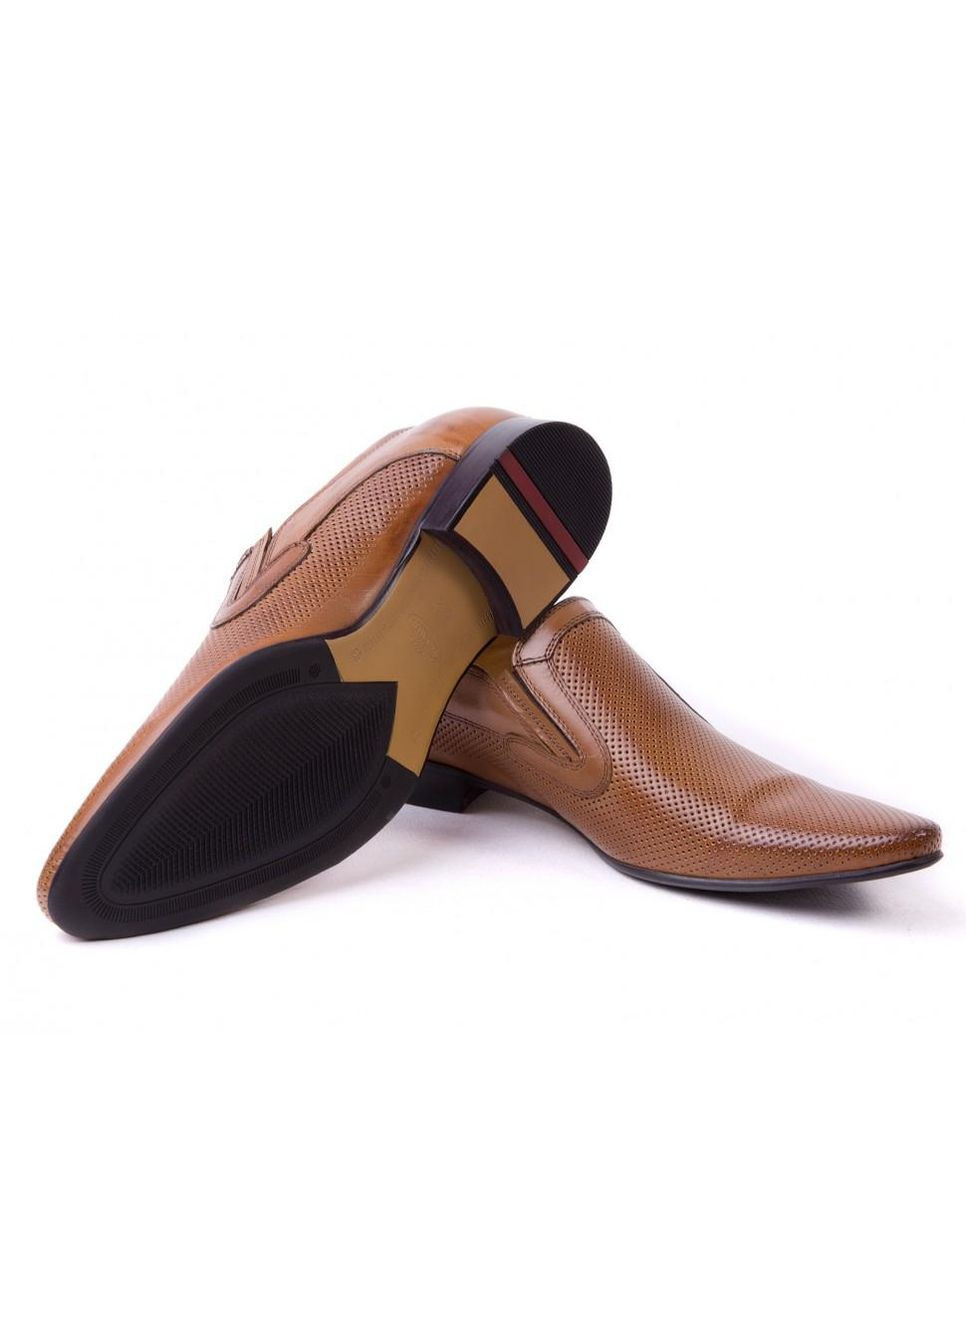 Коричневые туфли 7142128 42 цвет коричневый Brooman